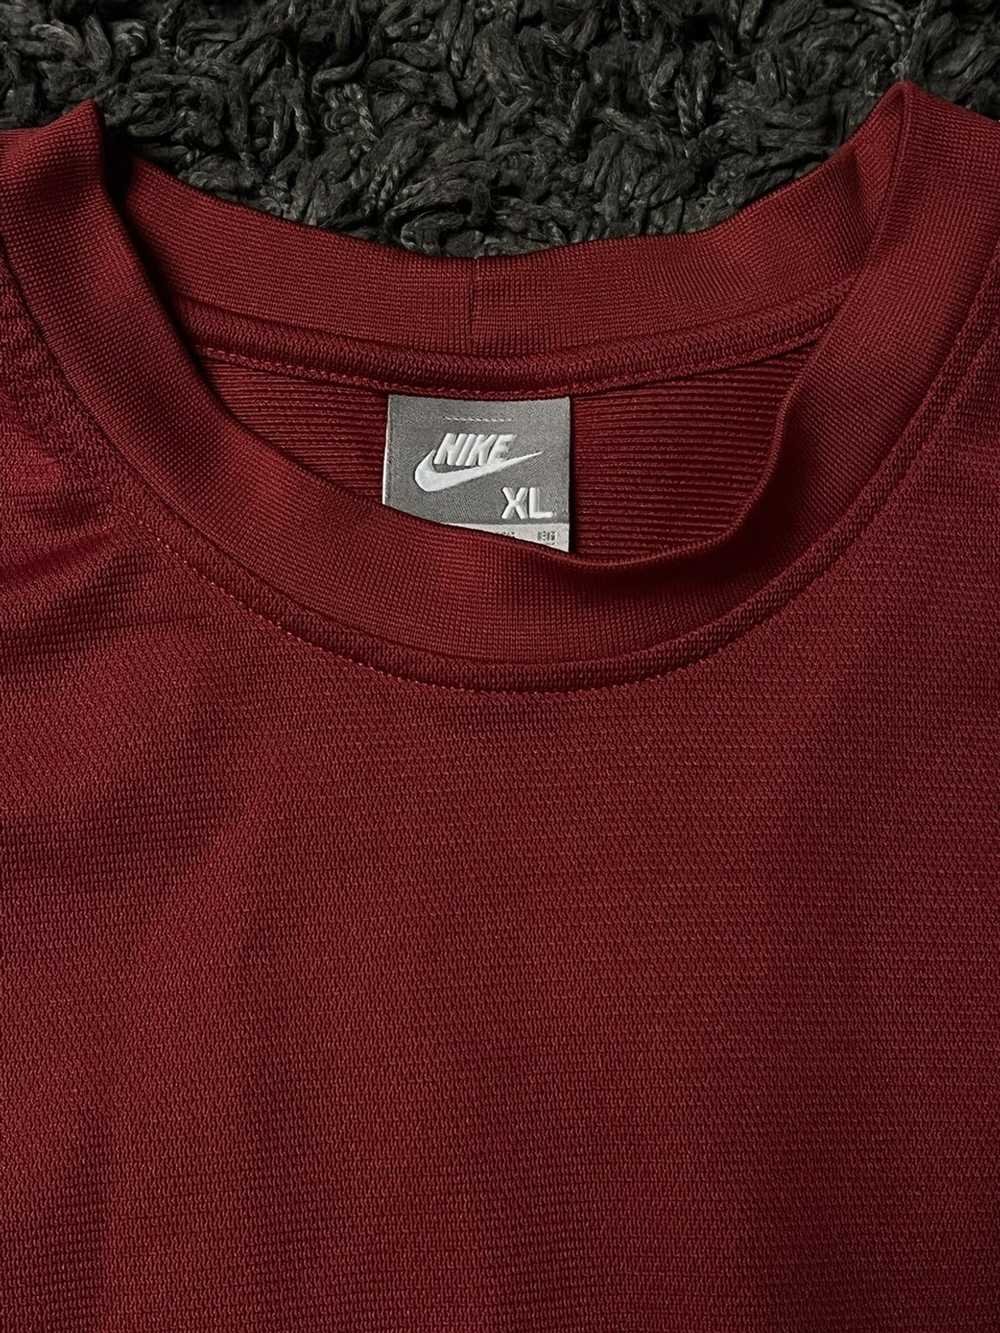 Nike × Vintage vintage nike sweater - image 2